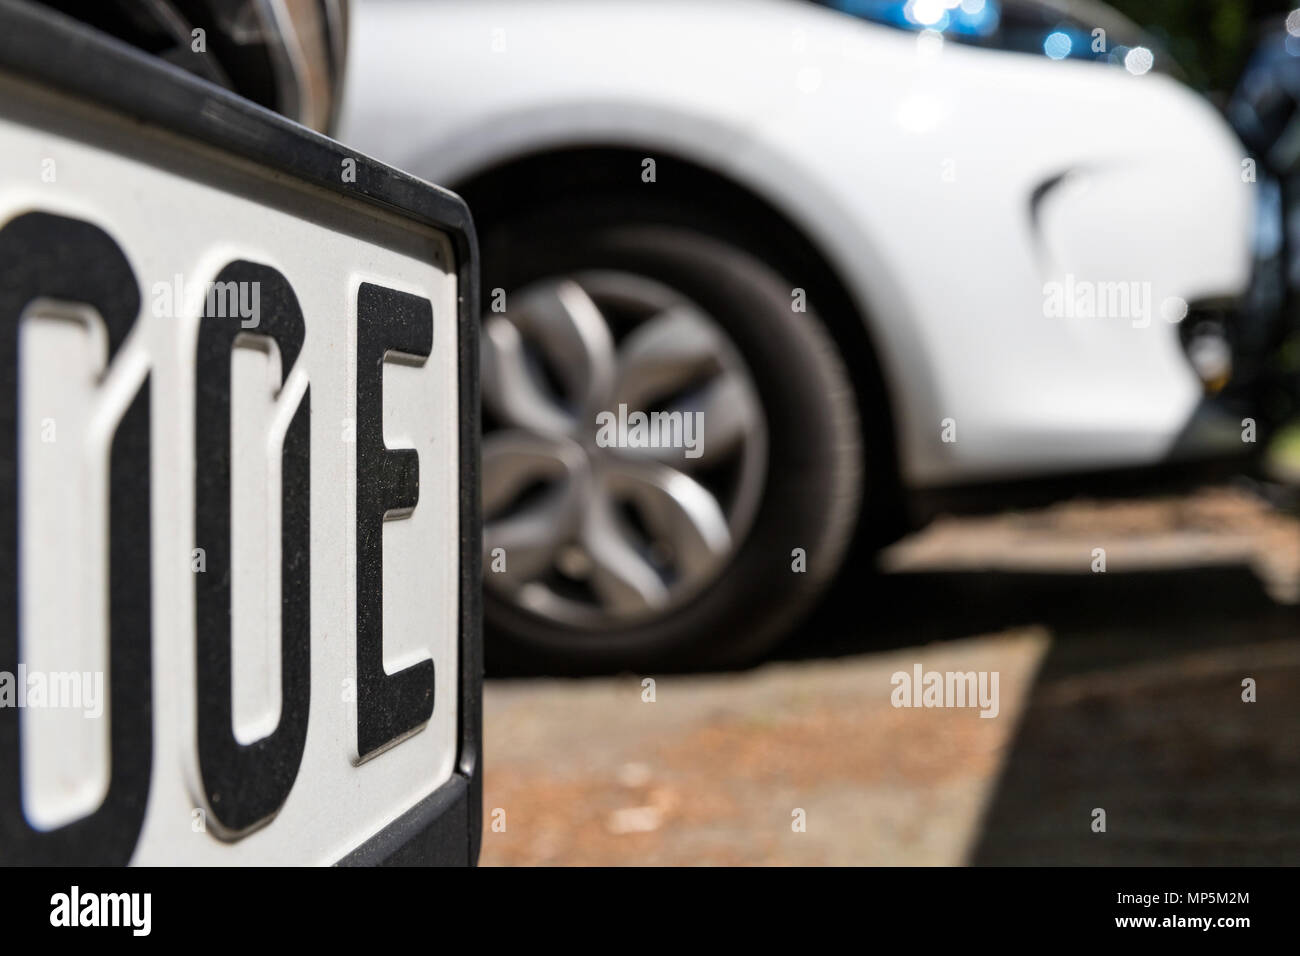 Deutschen Nummernschild für Elektroautos mit zusätzlichen Buchstaben "E" am Ende der Nummer. Stockfoto